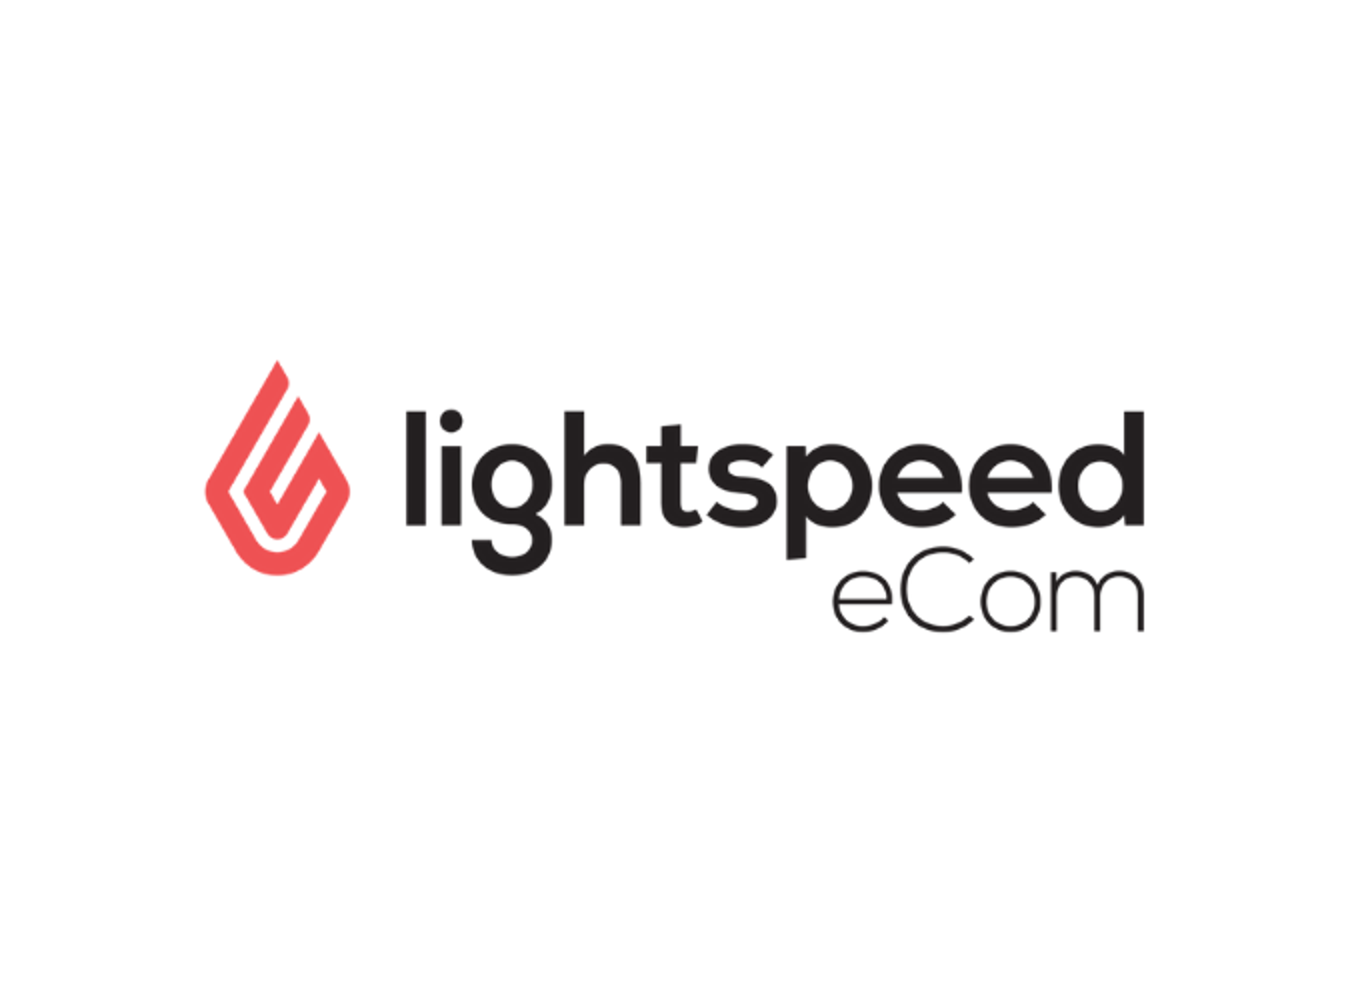 Lightspeed eCom logo